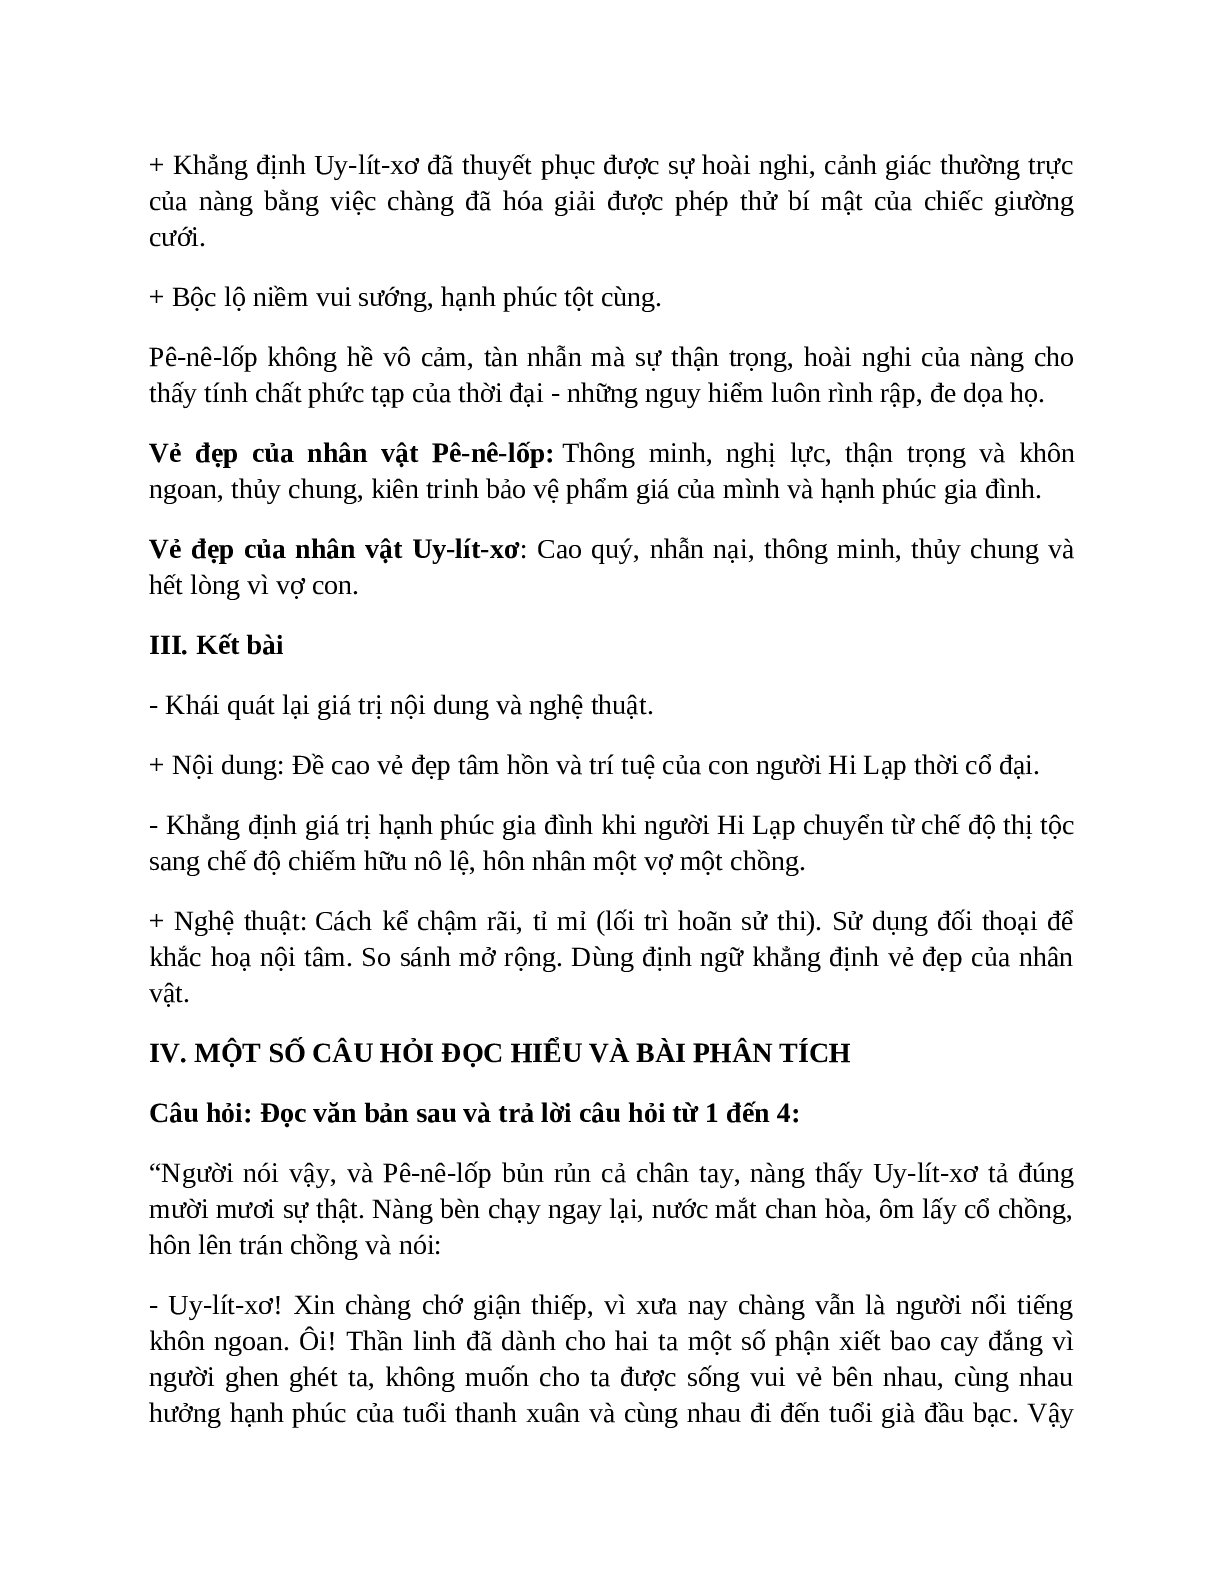 Sơ đồ tư duy bài Uy-lít-xơ trở về dễ nhớ, ngắn nhất - Ngữ văn lớp 10 (trang 7)